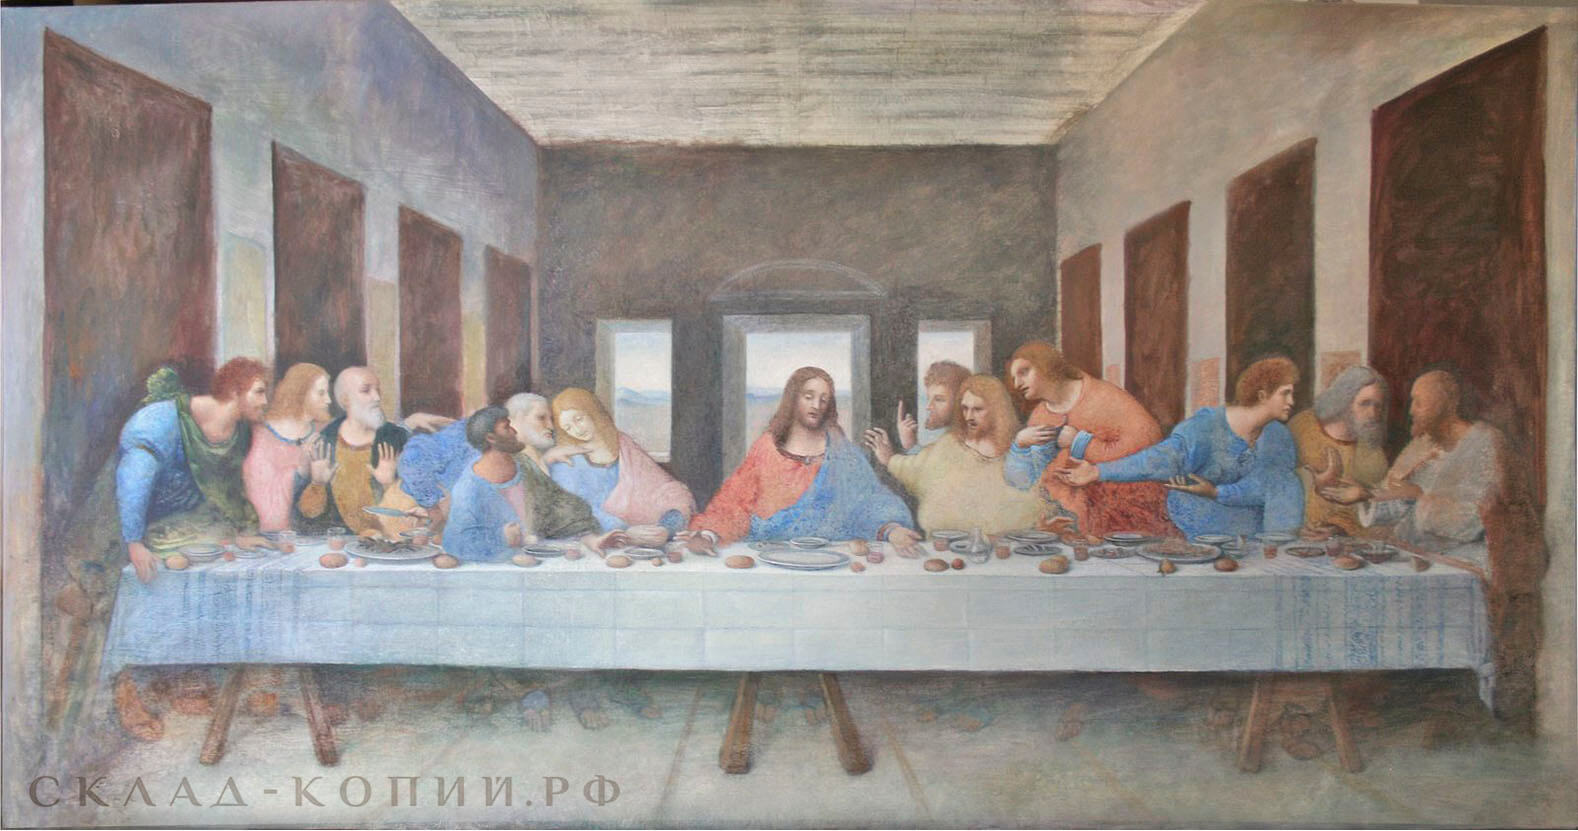 Леонардо да Винчи, Тайное вечеря, копия картины, пропись переднего плана, 2 этап